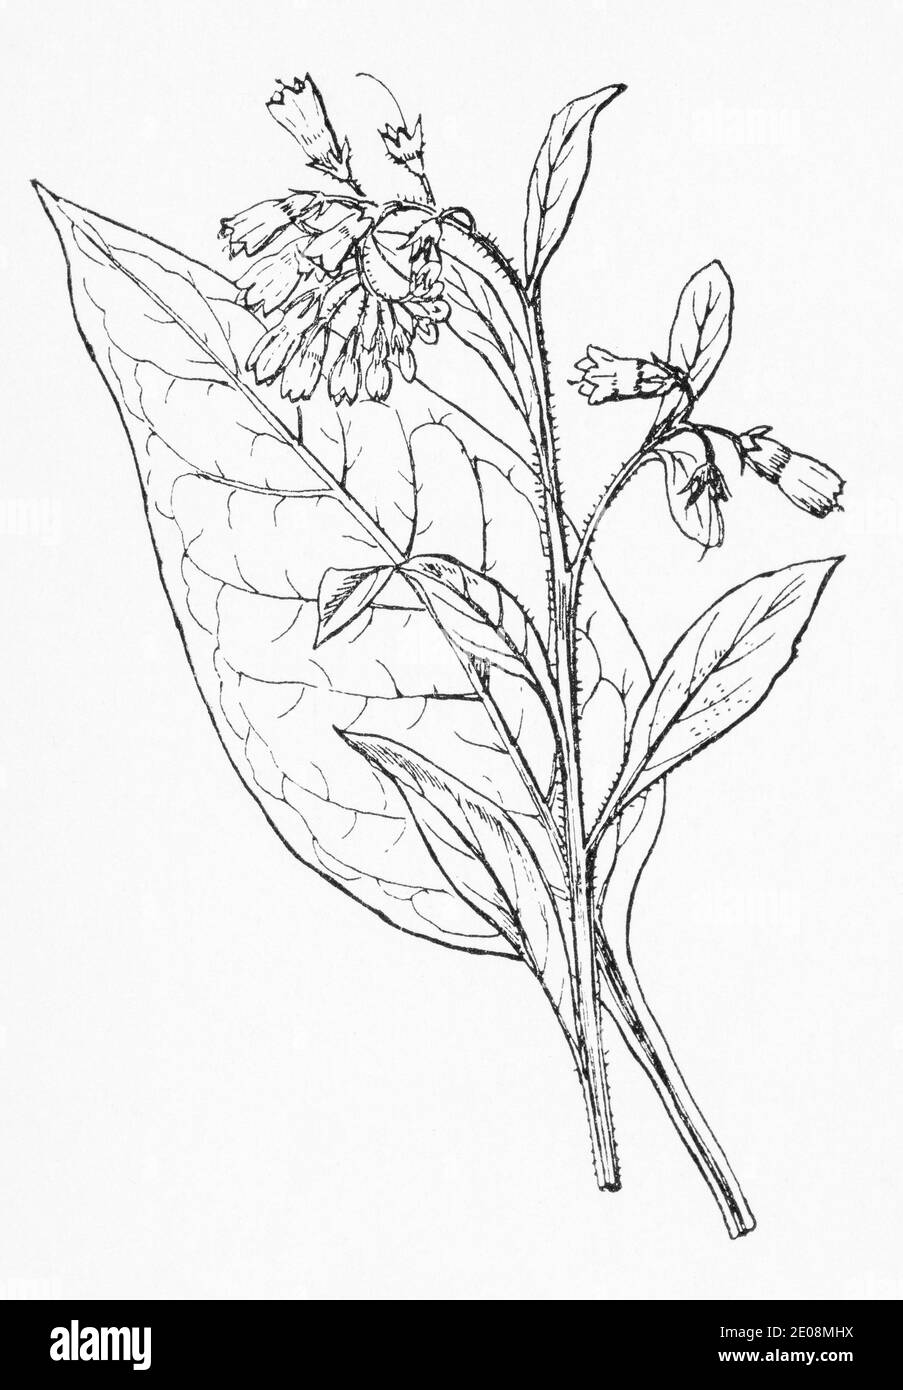 Ancienne gravure d'illustration botanique de Comfrey / Symphytum officinale. Célèbre plante médicinale traditionnelle. Voir Remarques Banque D'Images